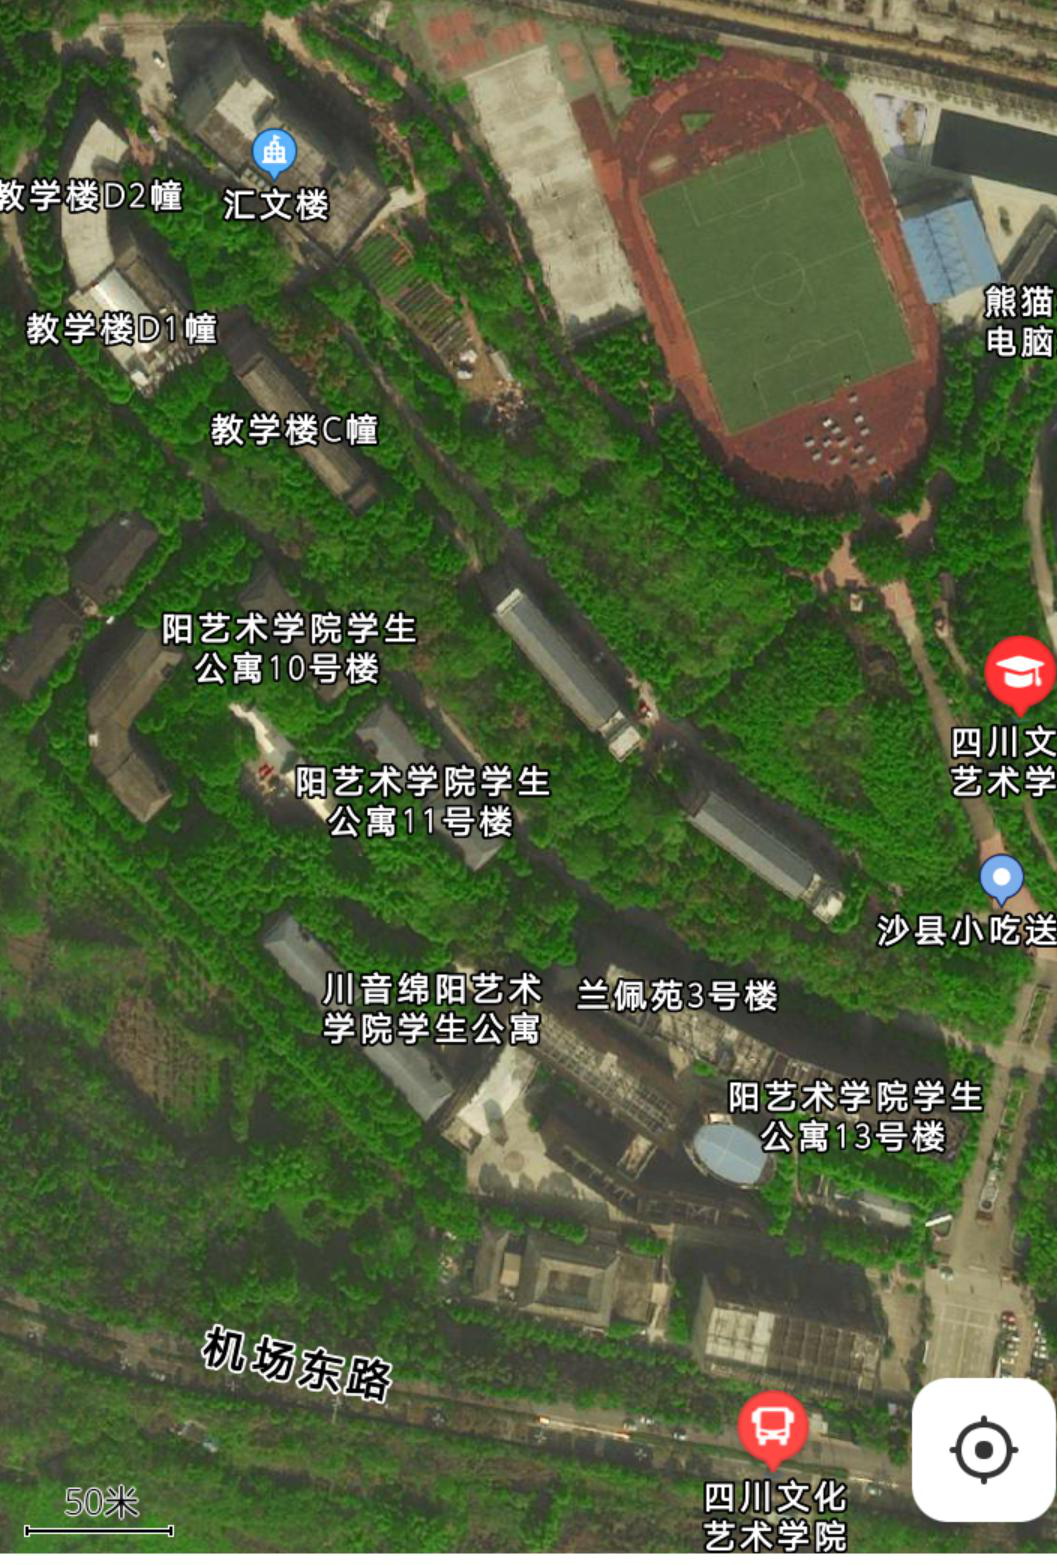 四川文化艺术学院地图图片